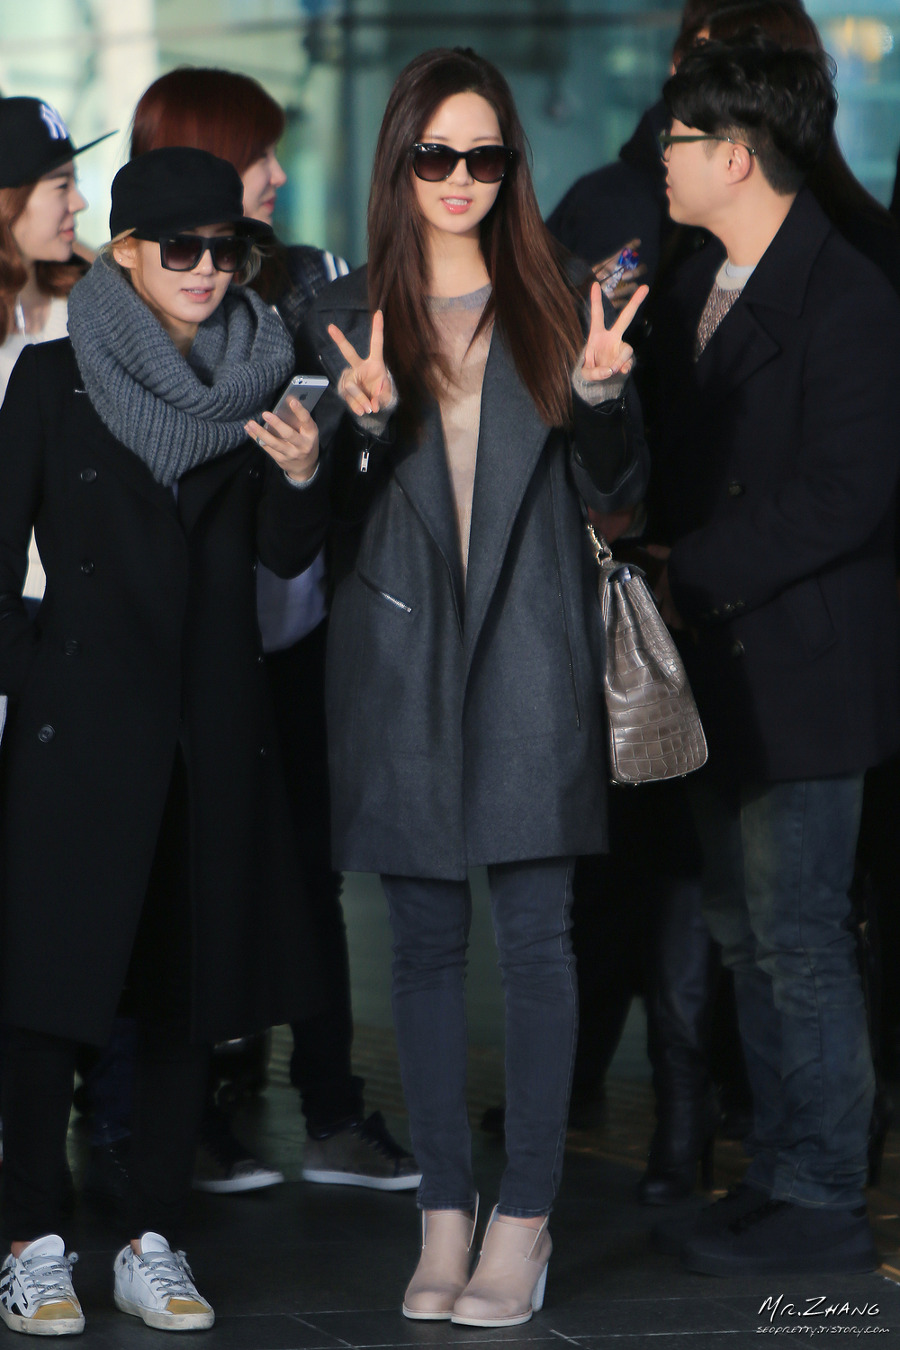 [PIC][01-12-2013]SNSD trở về Hàn Quốc vào trưa nay 23755E3F529B33A0281226